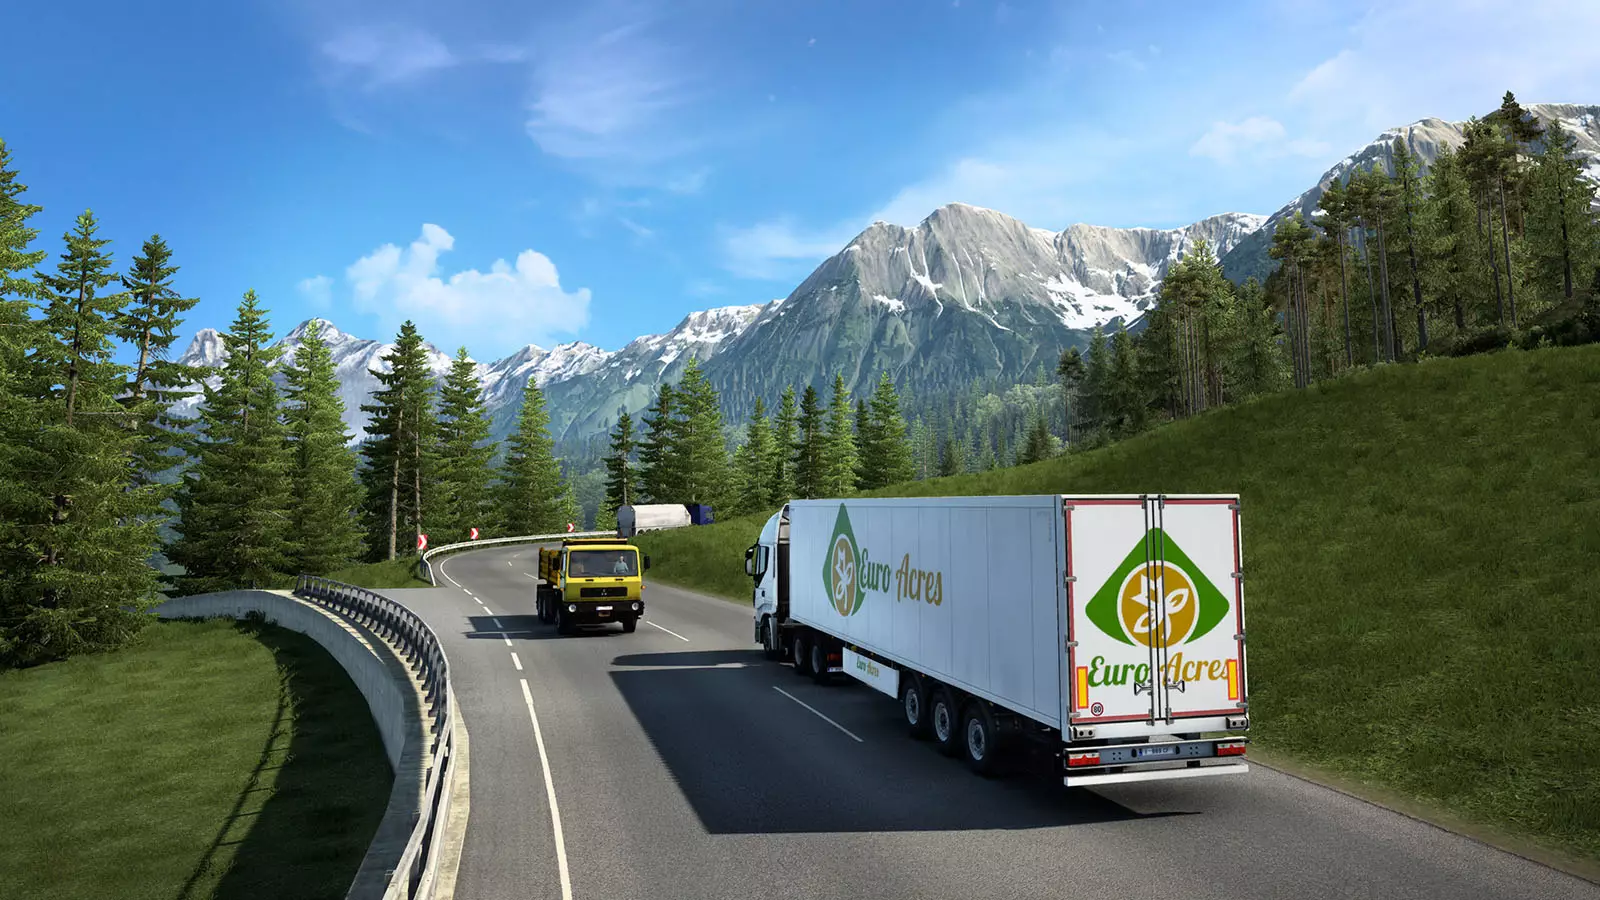 Euro Truck Simulator 2, PC Mac Linux Steam Game